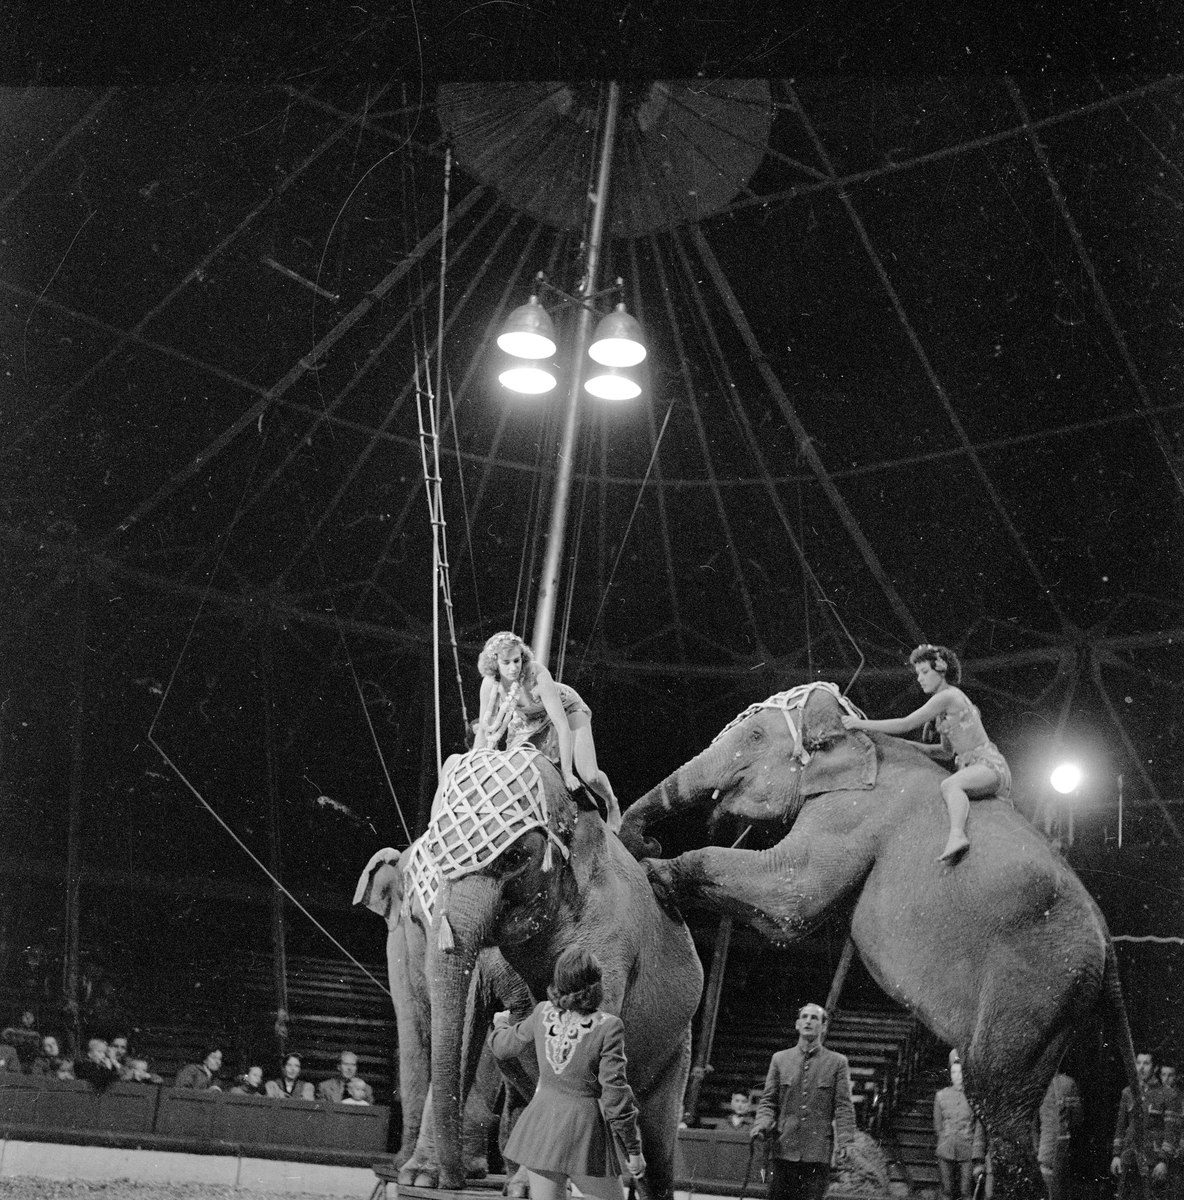 Oslo, september 1957, Sirkus Scott i byen, med elefanter, kameler, hester og sirkusartister.